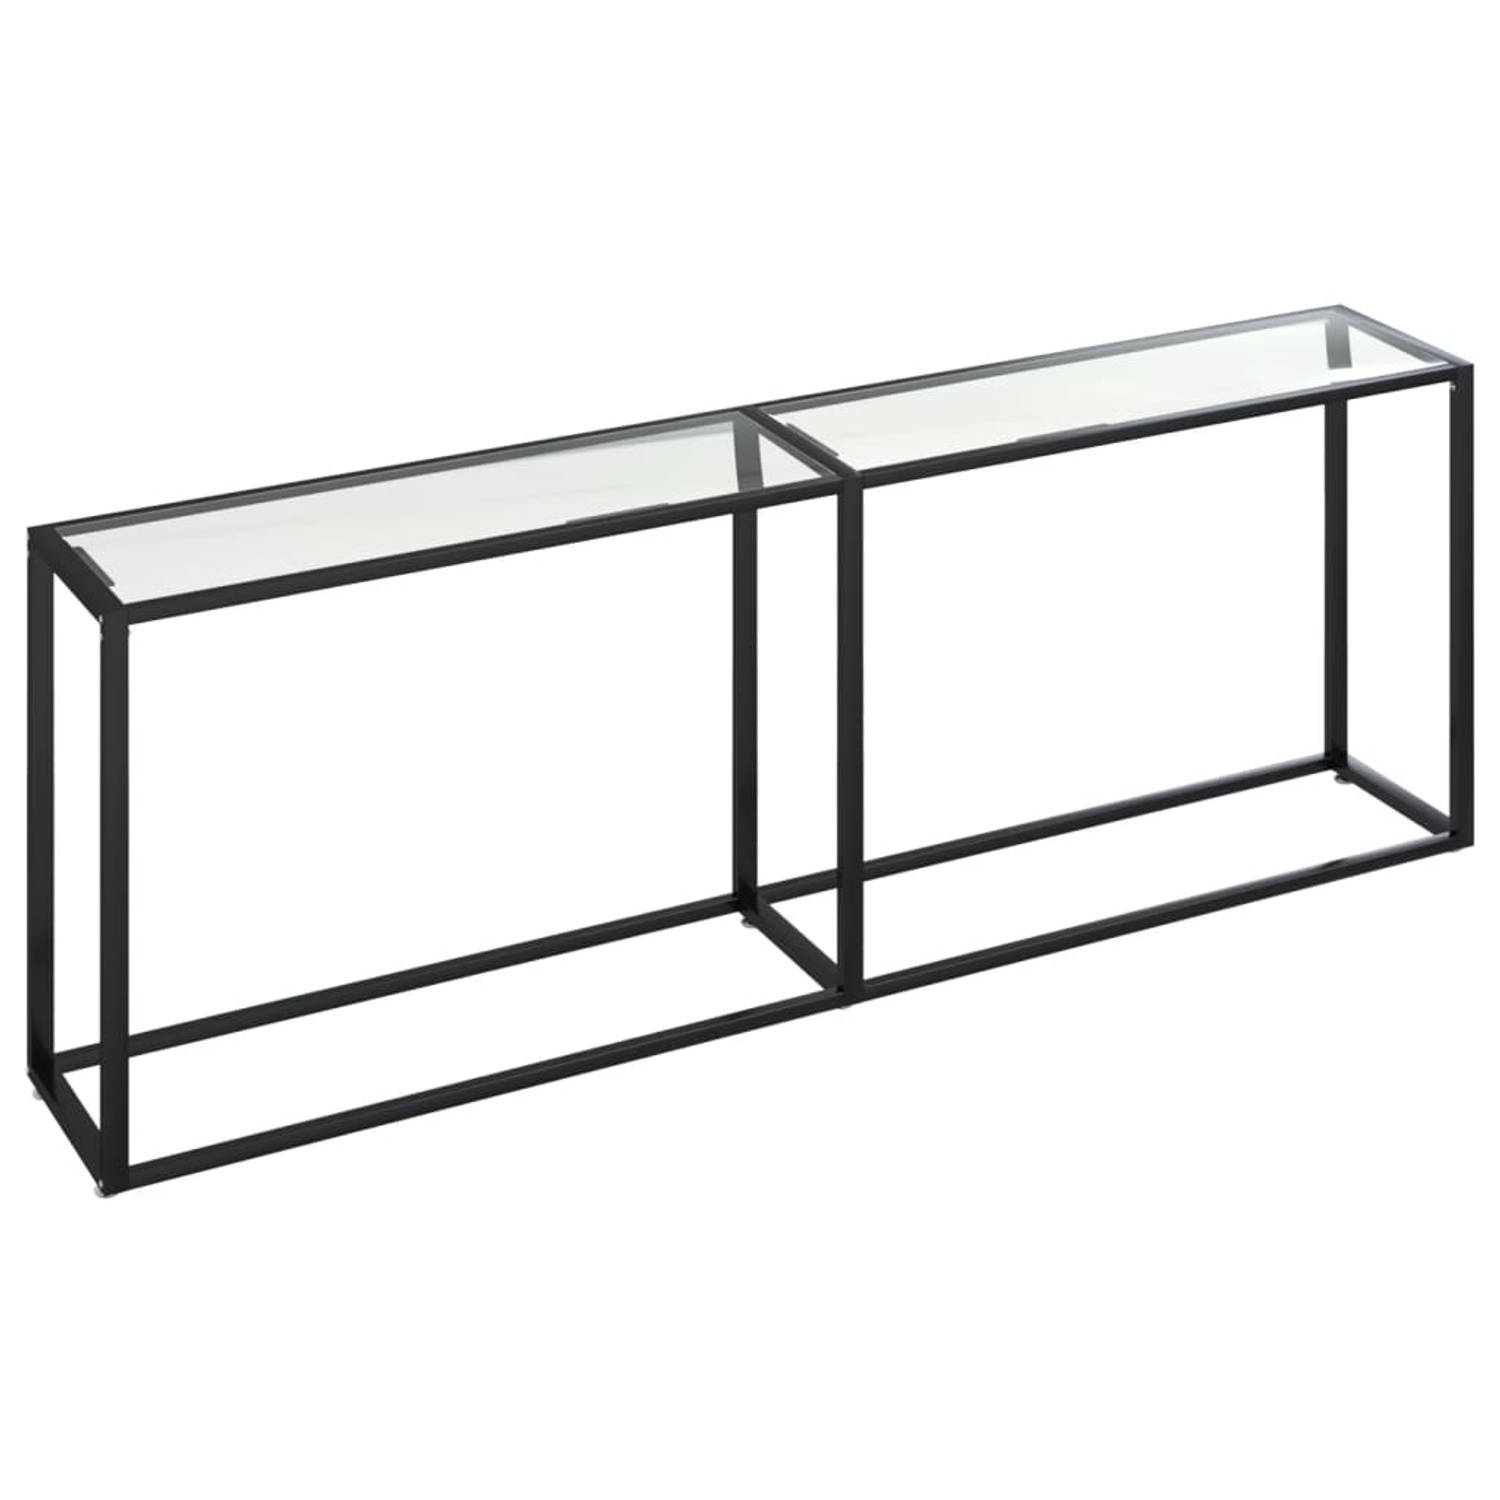 The Living Store Wandtafel Loft - Meubelen - 220 x 35 x 75.5 cm - Transparant glas